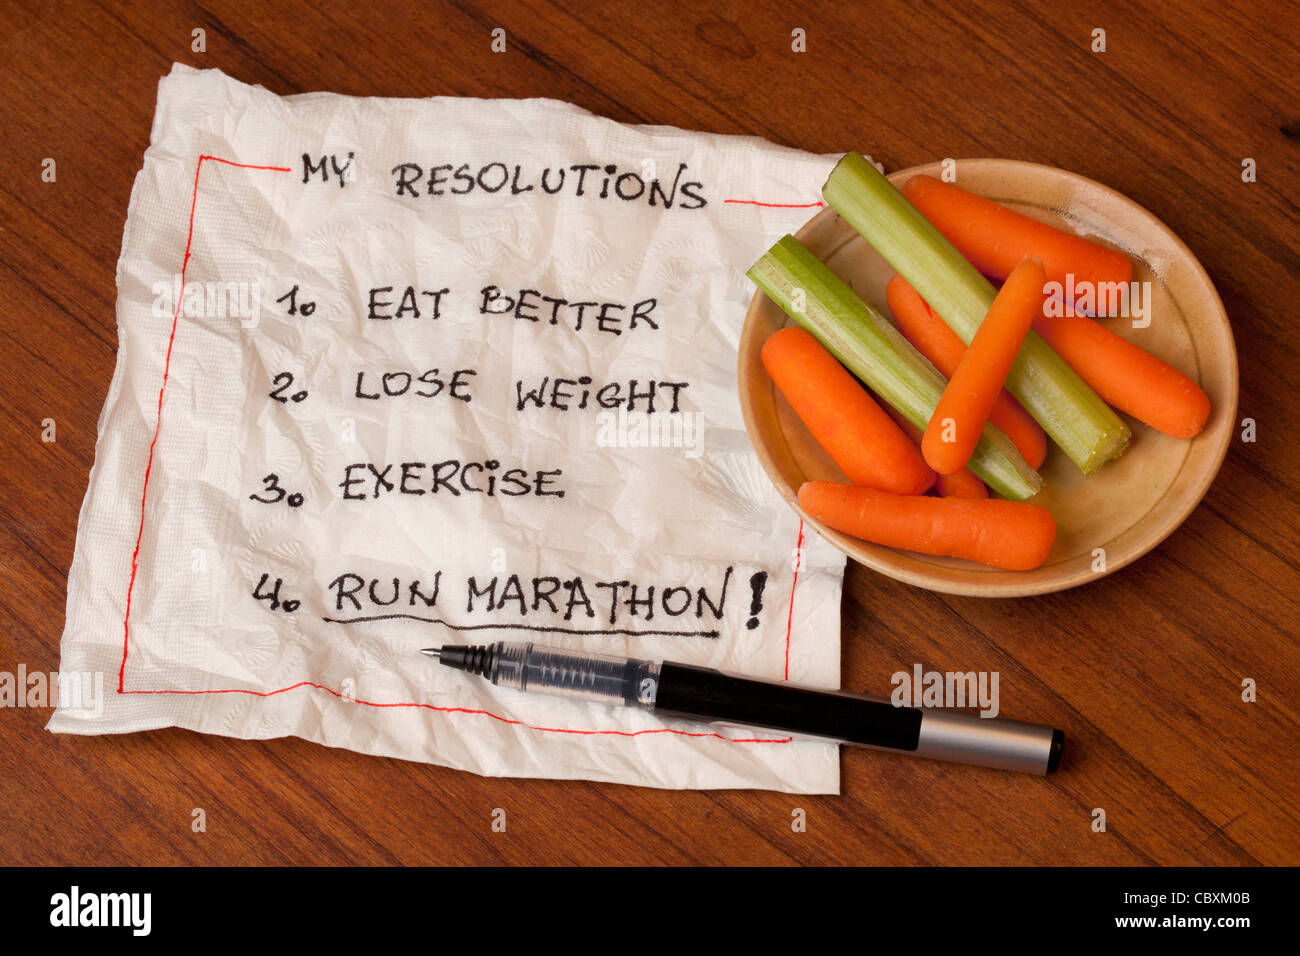 gesunde und ehrgeizige Neujahrs-Vorsätze (Diät, verlieren Gewicht, Bewegung, laufen Marathon) - Serviette Handschrift Stockfoto